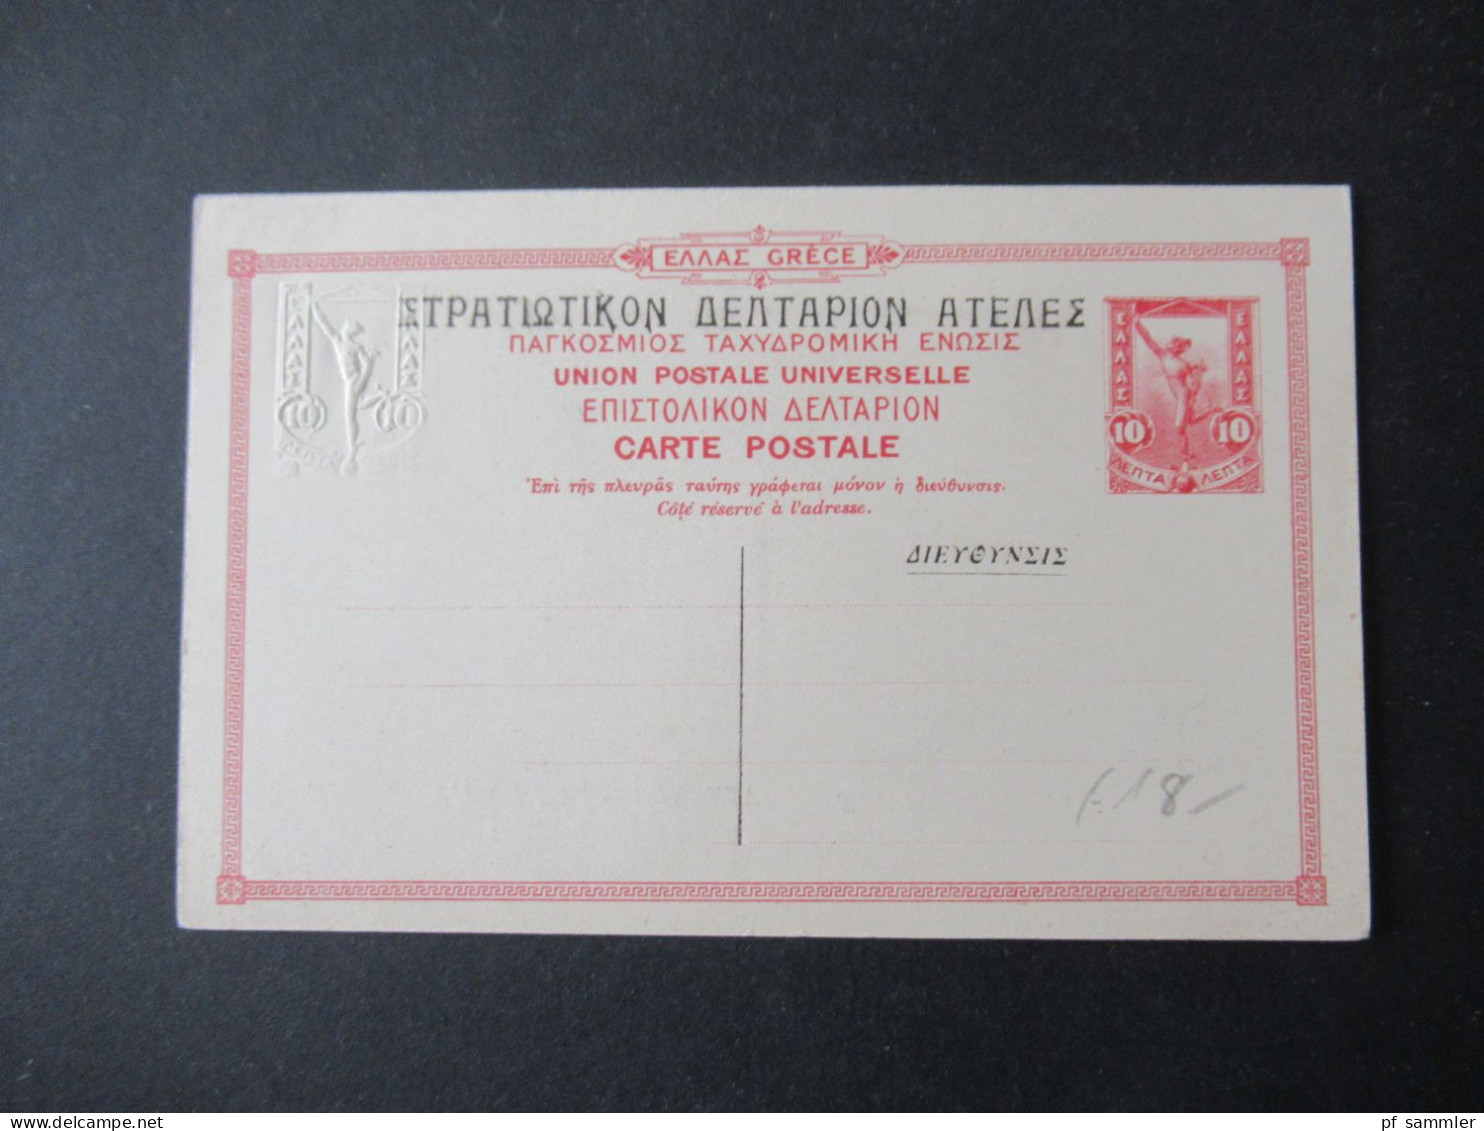 Griechenland Um 1900 GA Aufdruck Bild PK Athenes Vue De L'Ancienne Agora Edition Du Cervice Des Postes Helleniques - Interi Postali